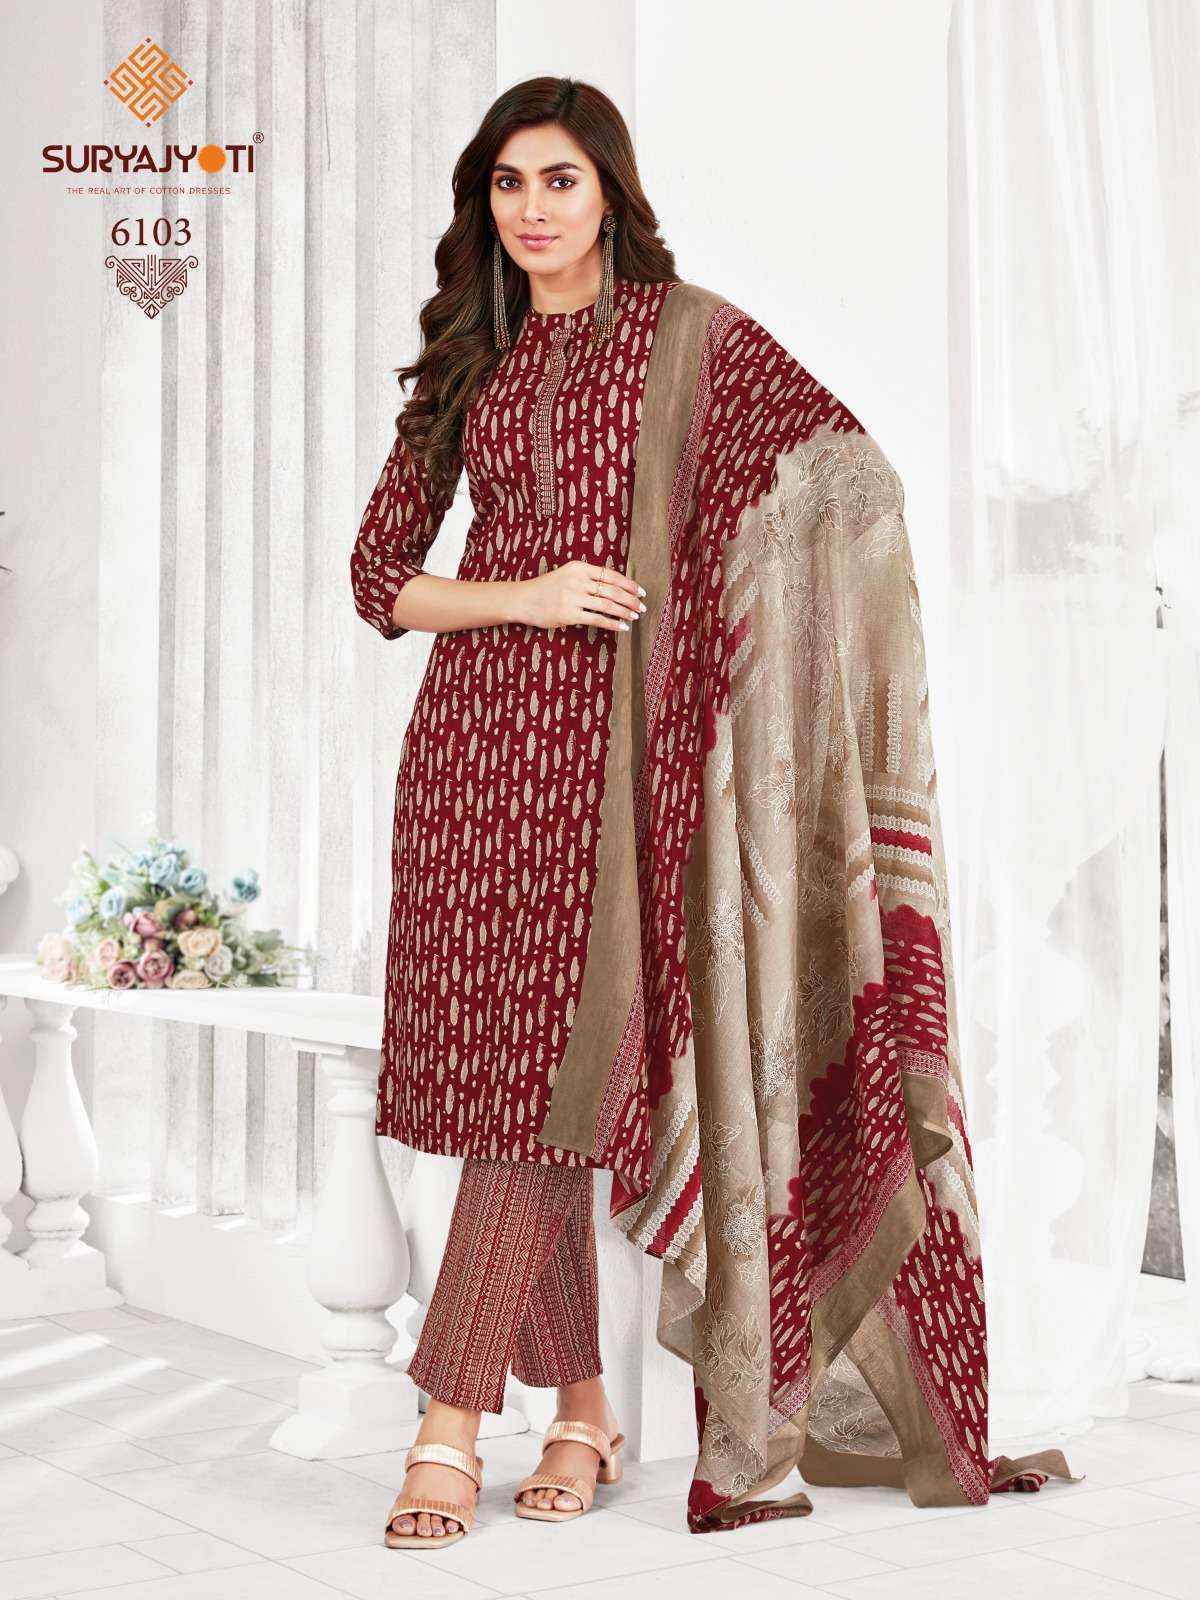 Suryajyoti Trendy Cotton Vol 61 Cotton Dress Material 20 pcs Catalogue